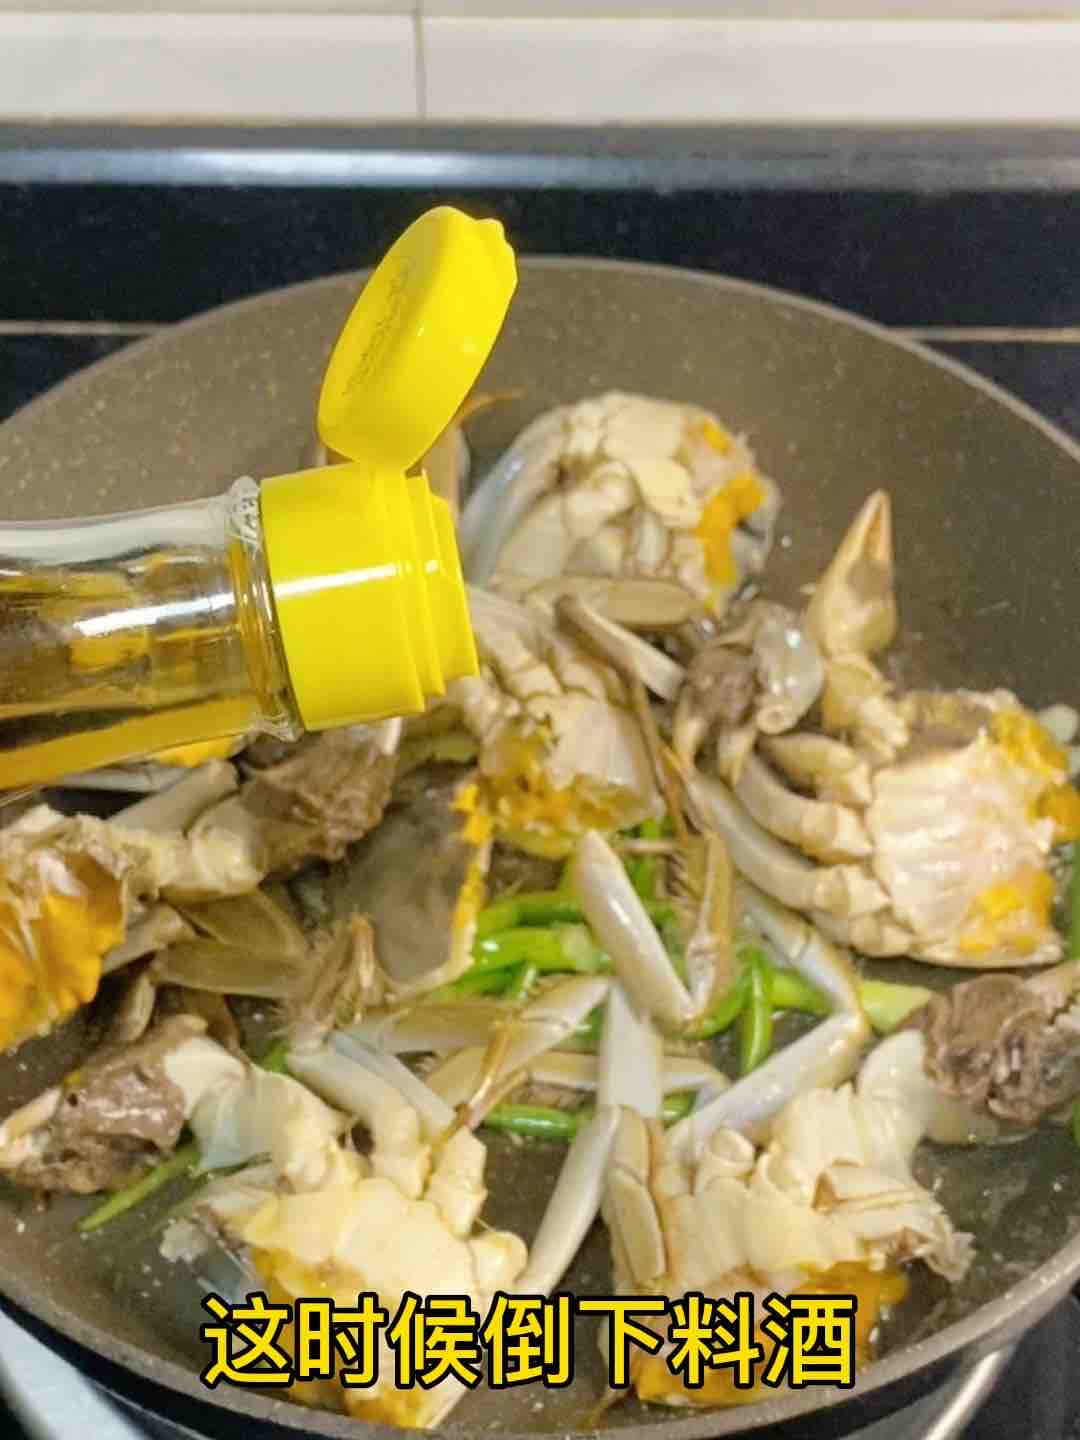 Sauté ❗️ Three-minute Fattened Crab recipe